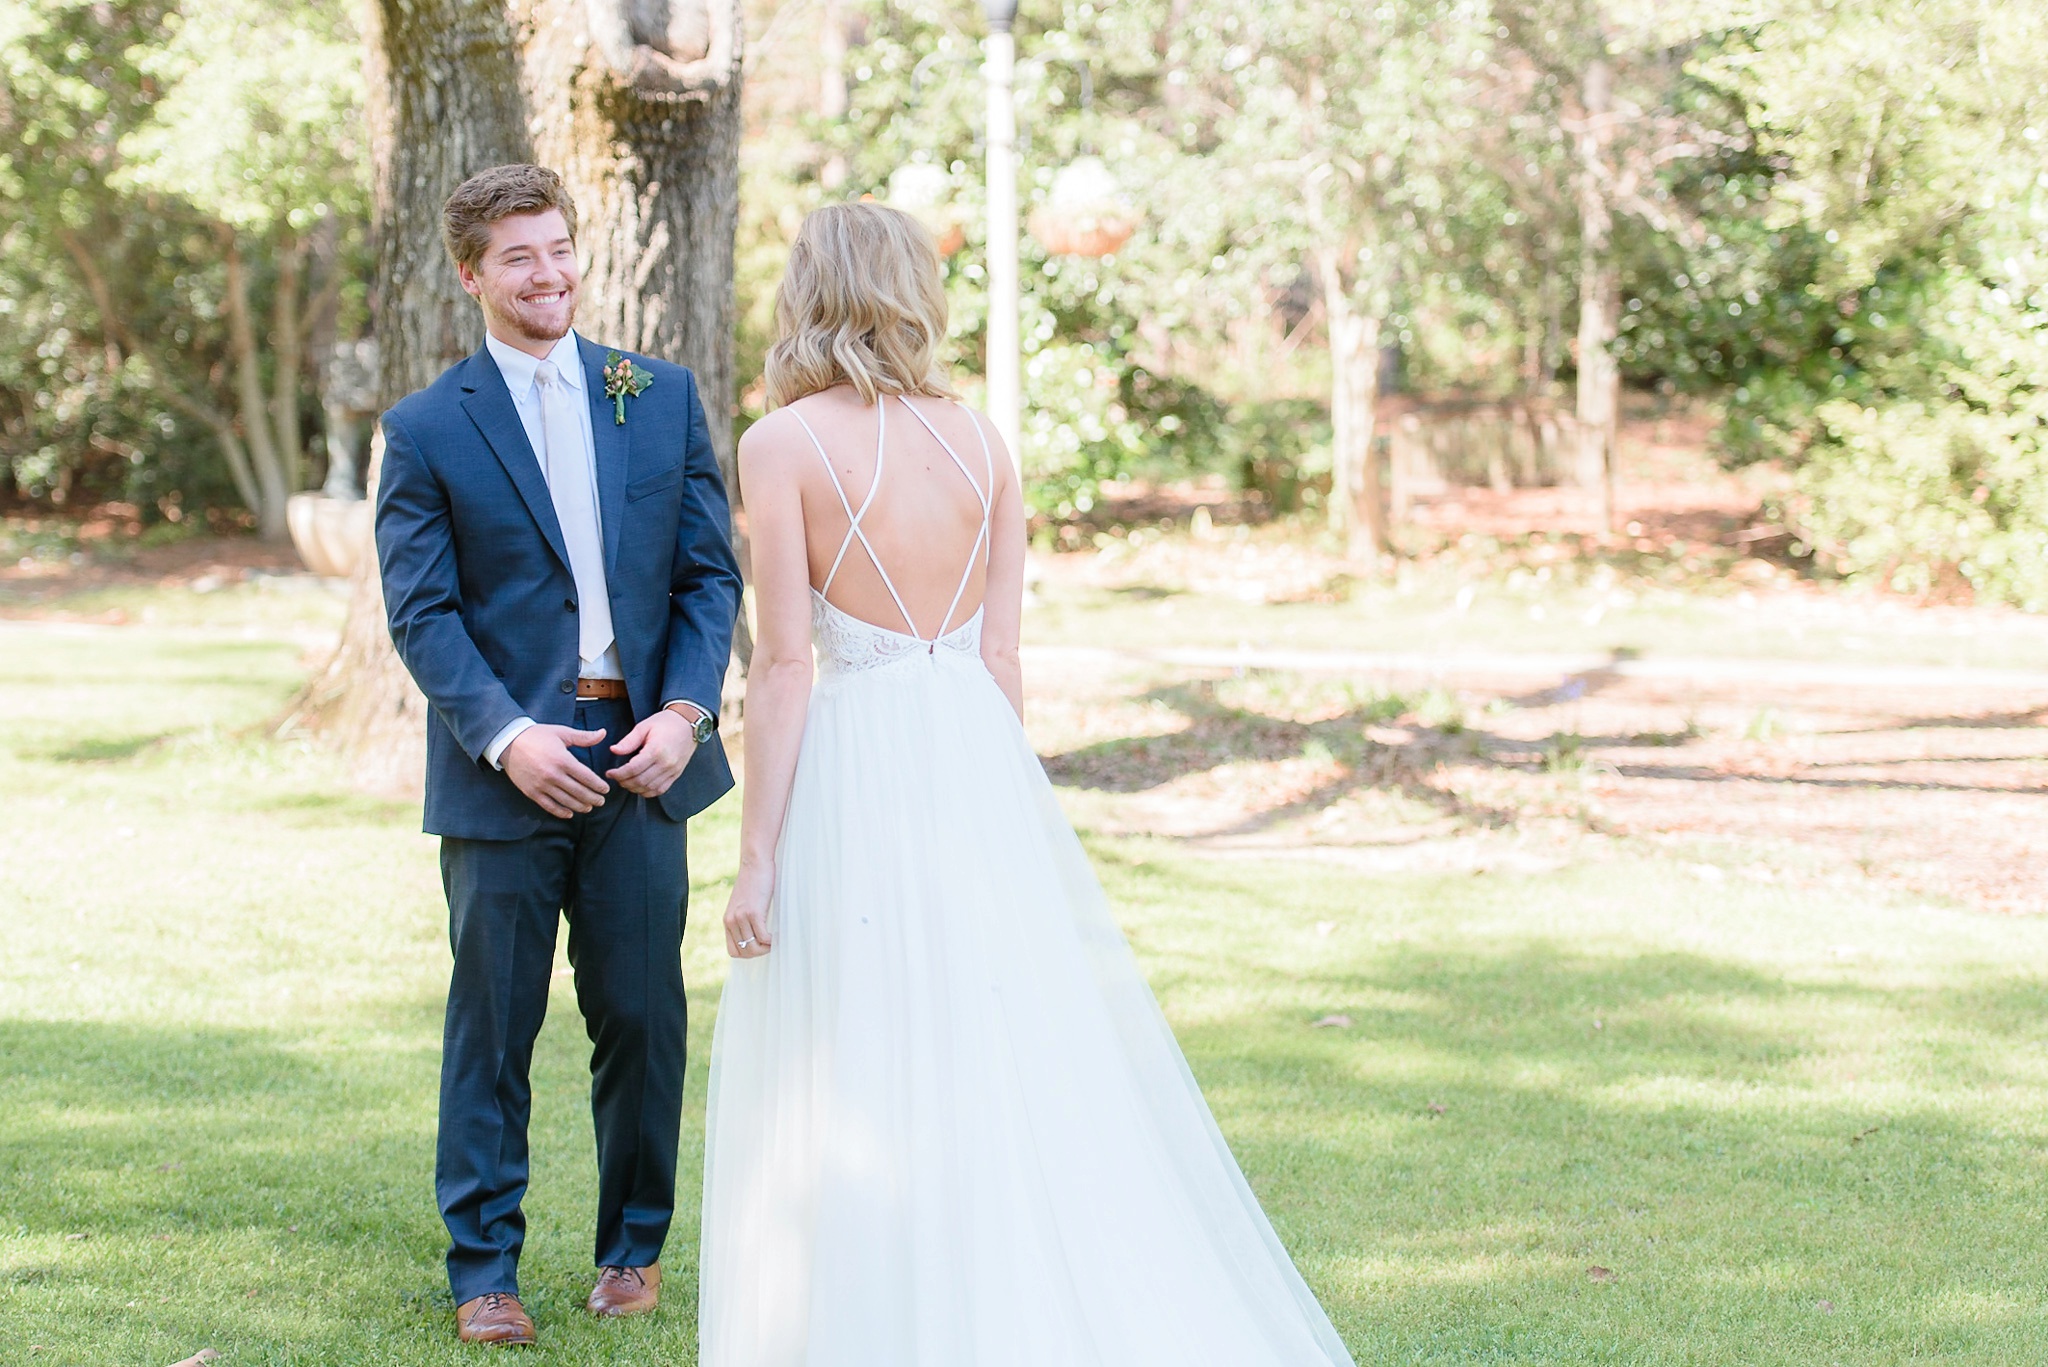 Aldridge Gardens Spring Wedding | Birmingham Alabama Wedding Photographers_0025.jpg